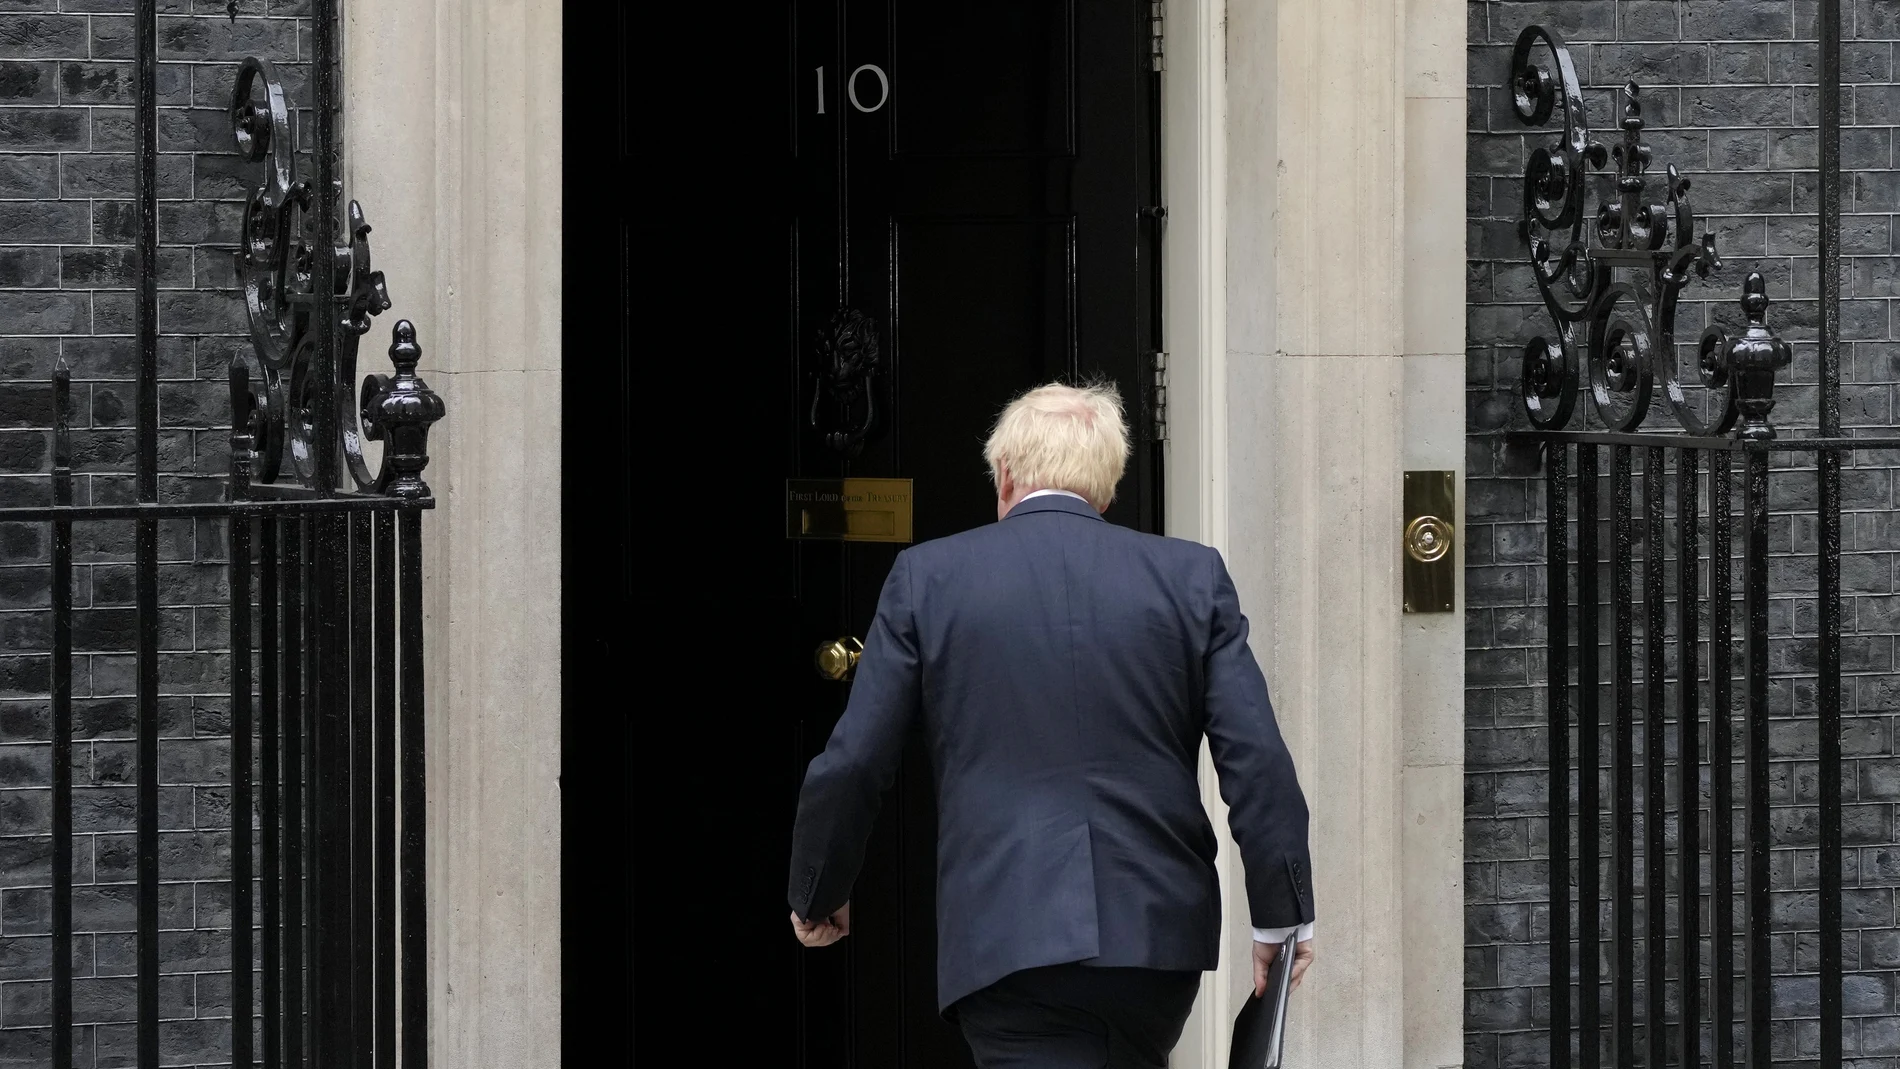 El todavía primer ministro Boris Johnson regresa a Downing Street tras pronunciar su discurso de dimisión